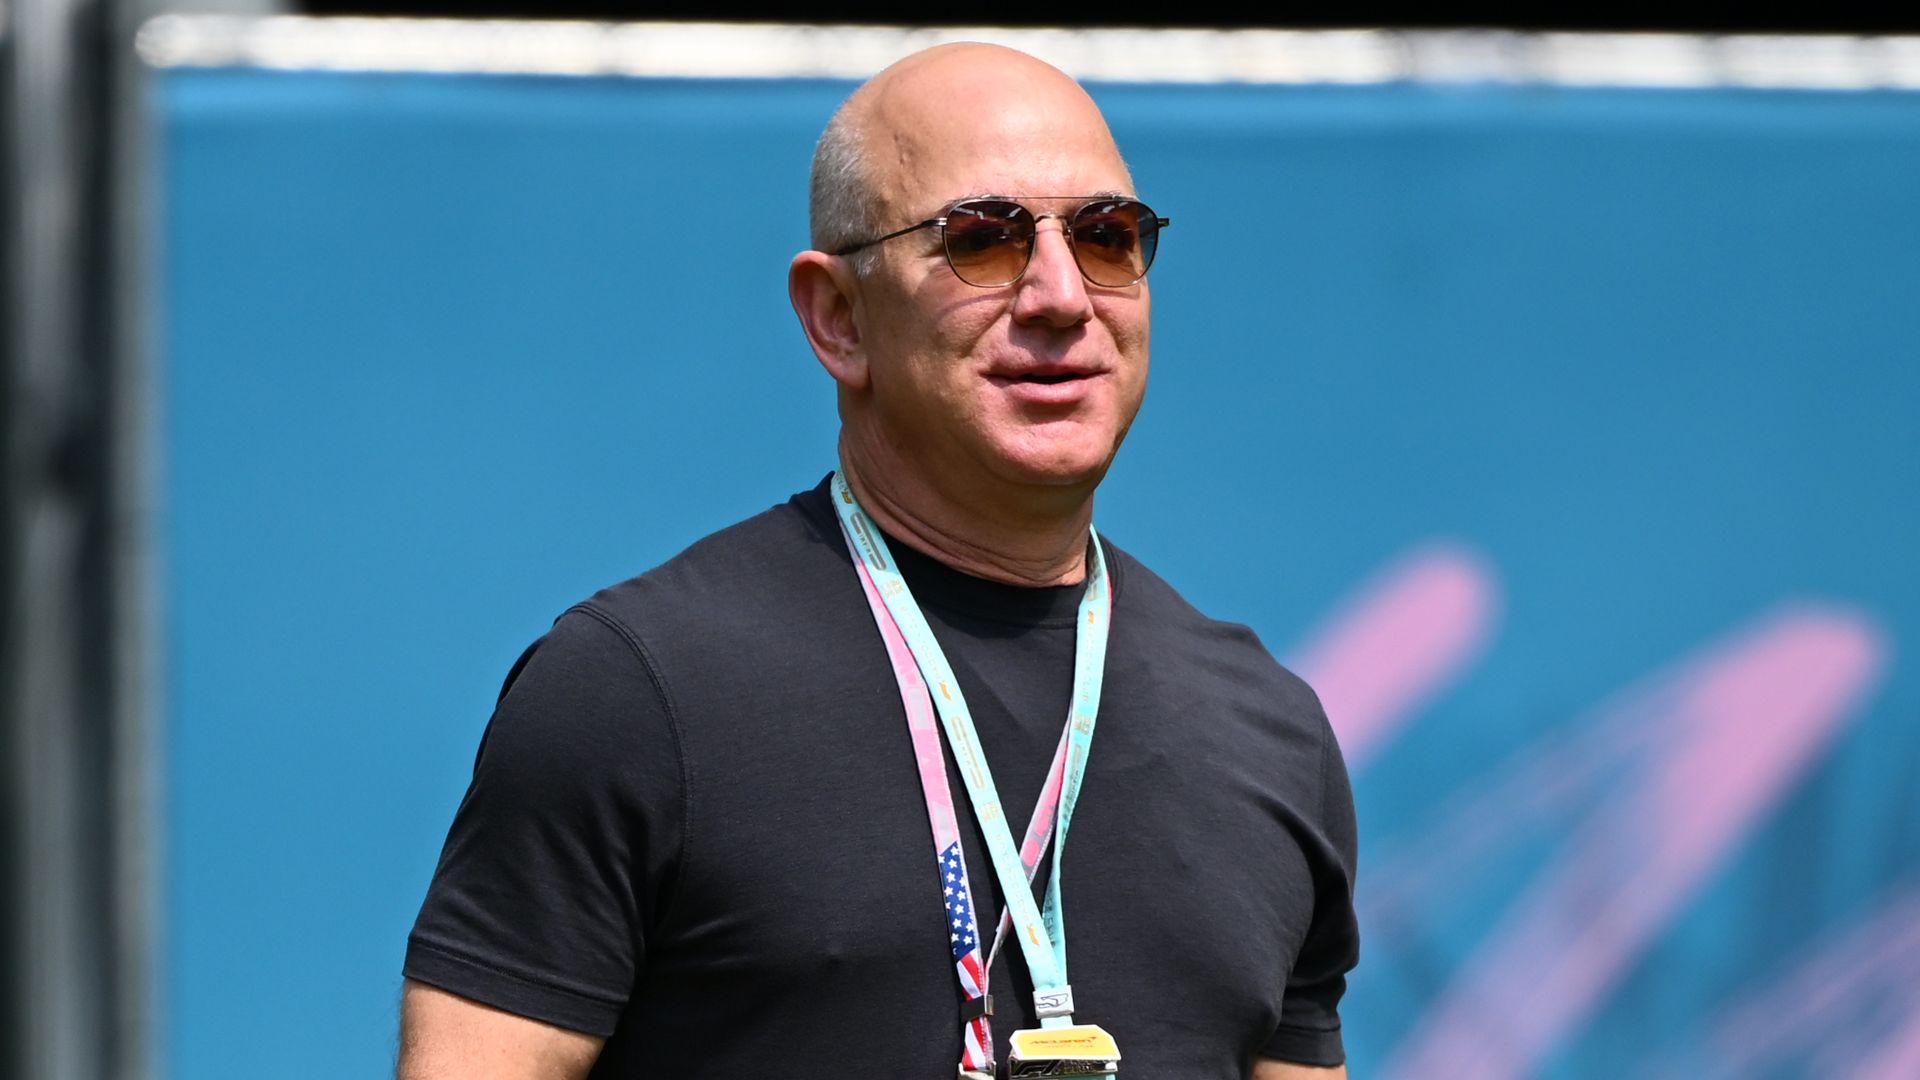 Jeff Bezos in Miami for F1 Grand Prix